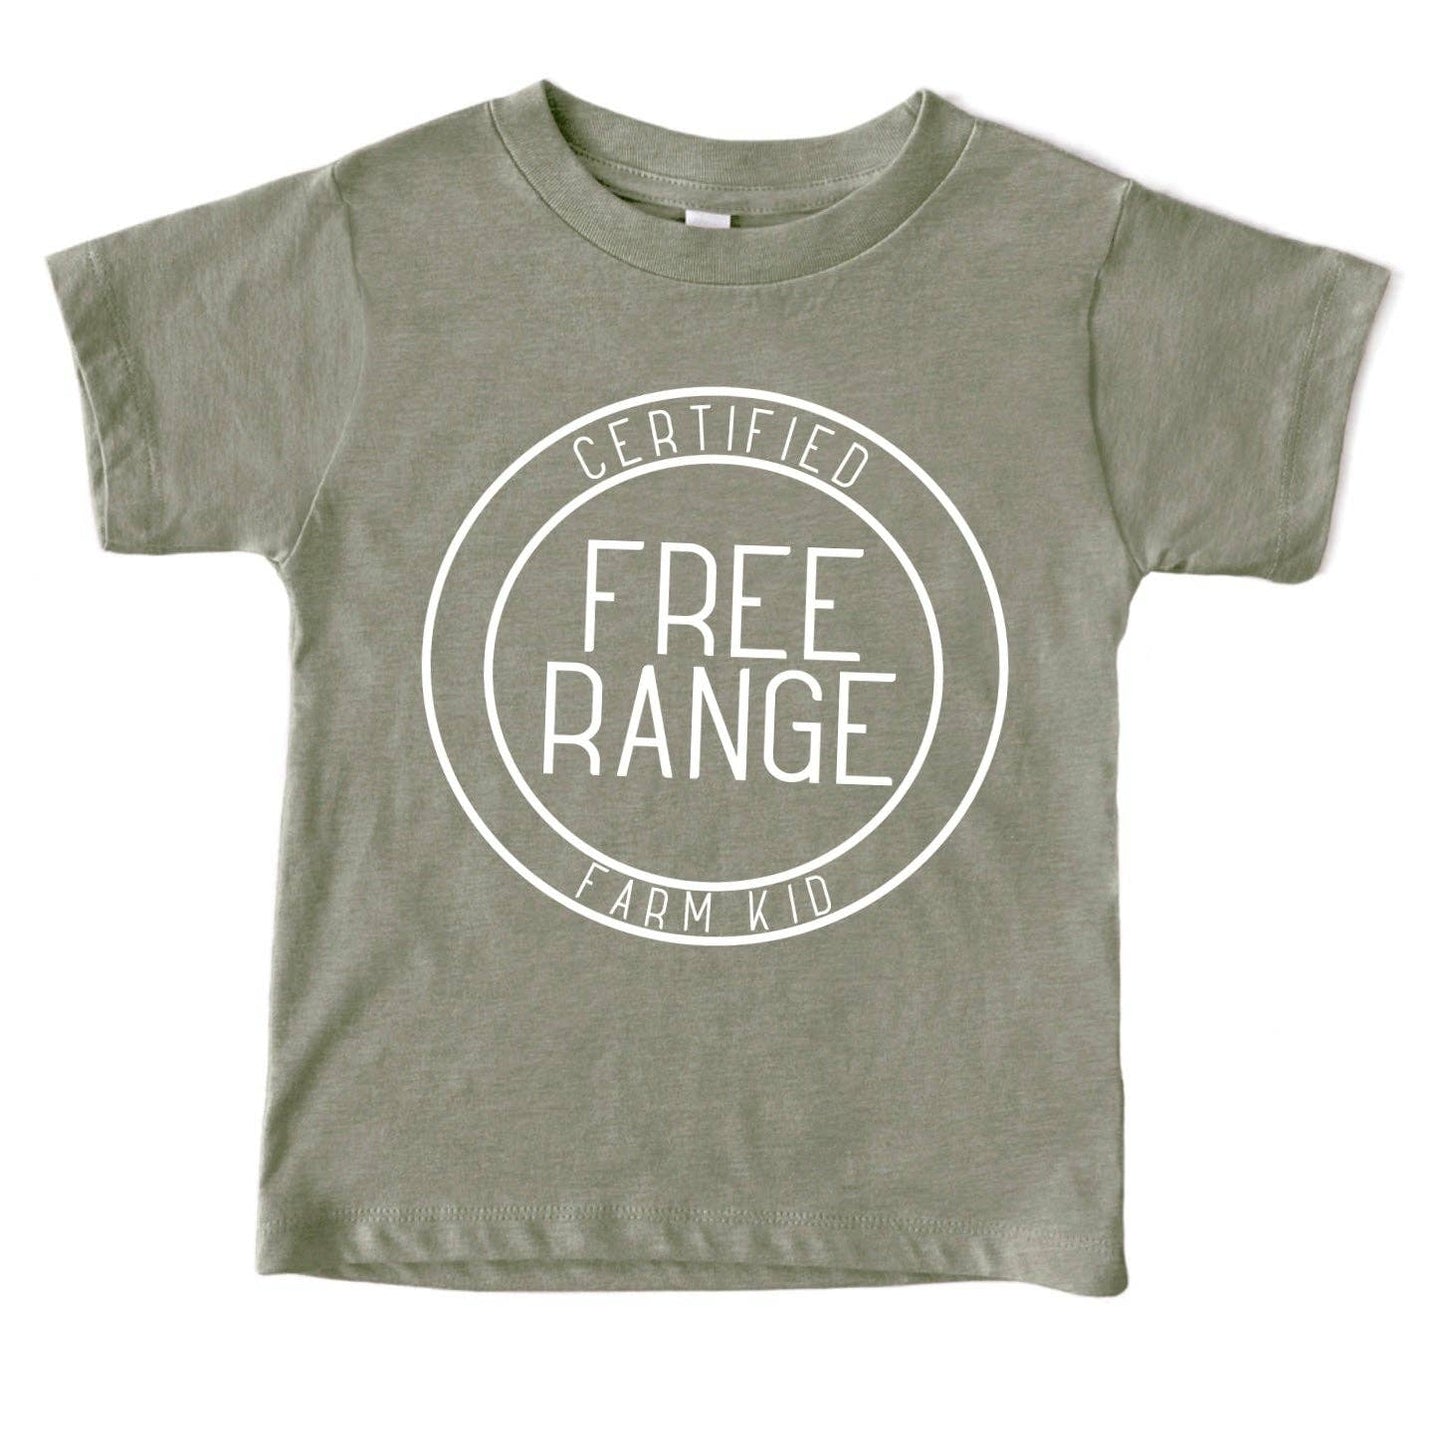 Free Range Farm Kid